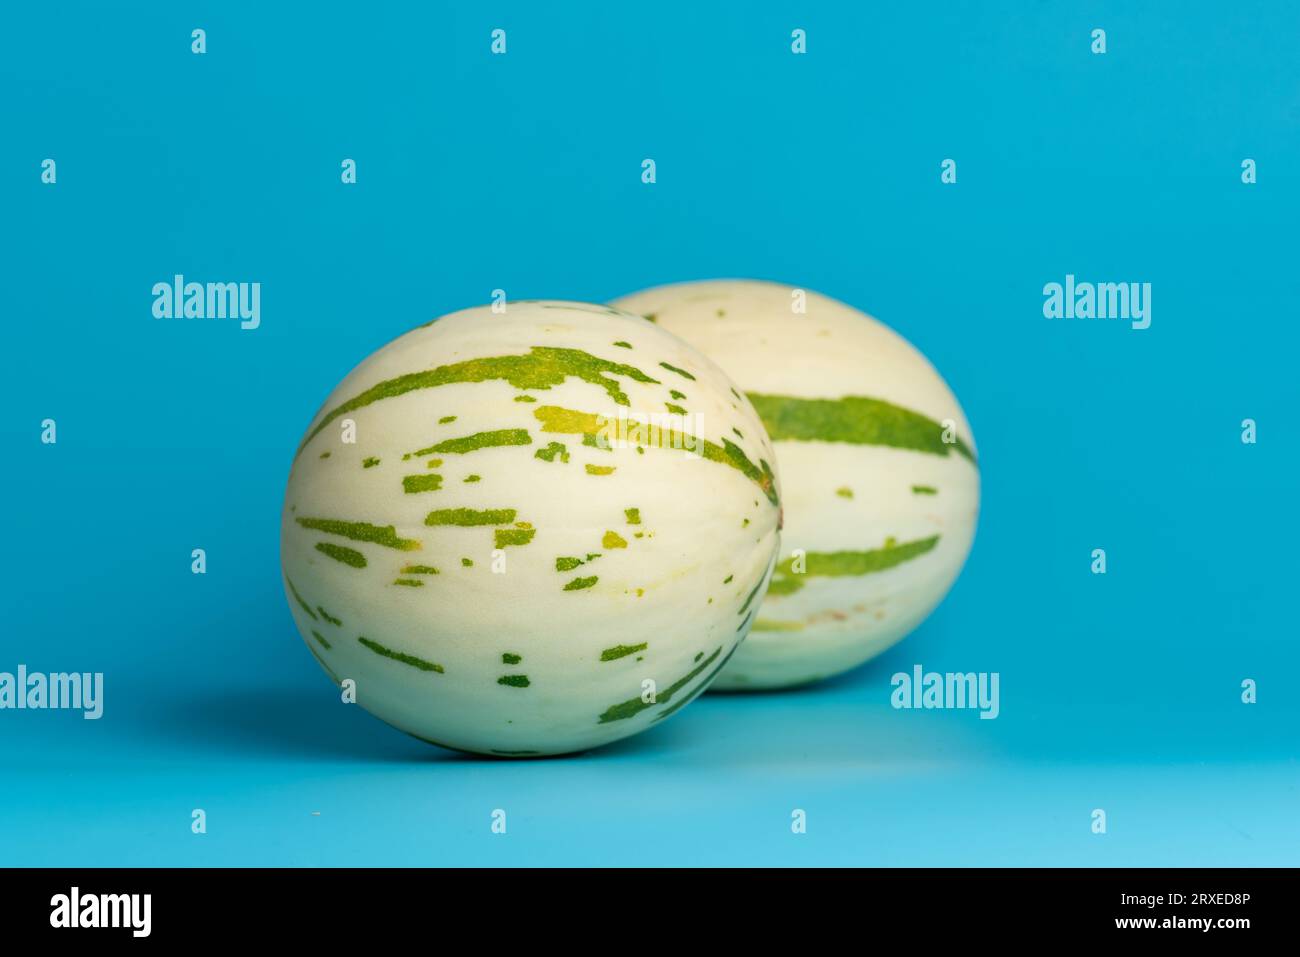 Elfenbeinfarbene gaya-Melone mit grün gepunkteten Streifen und Flecken auf blauem Hintergrund. Bunte reife, saftige und weiche Früchte, süßer Geschmack mit blumigen Noten Stockfoto